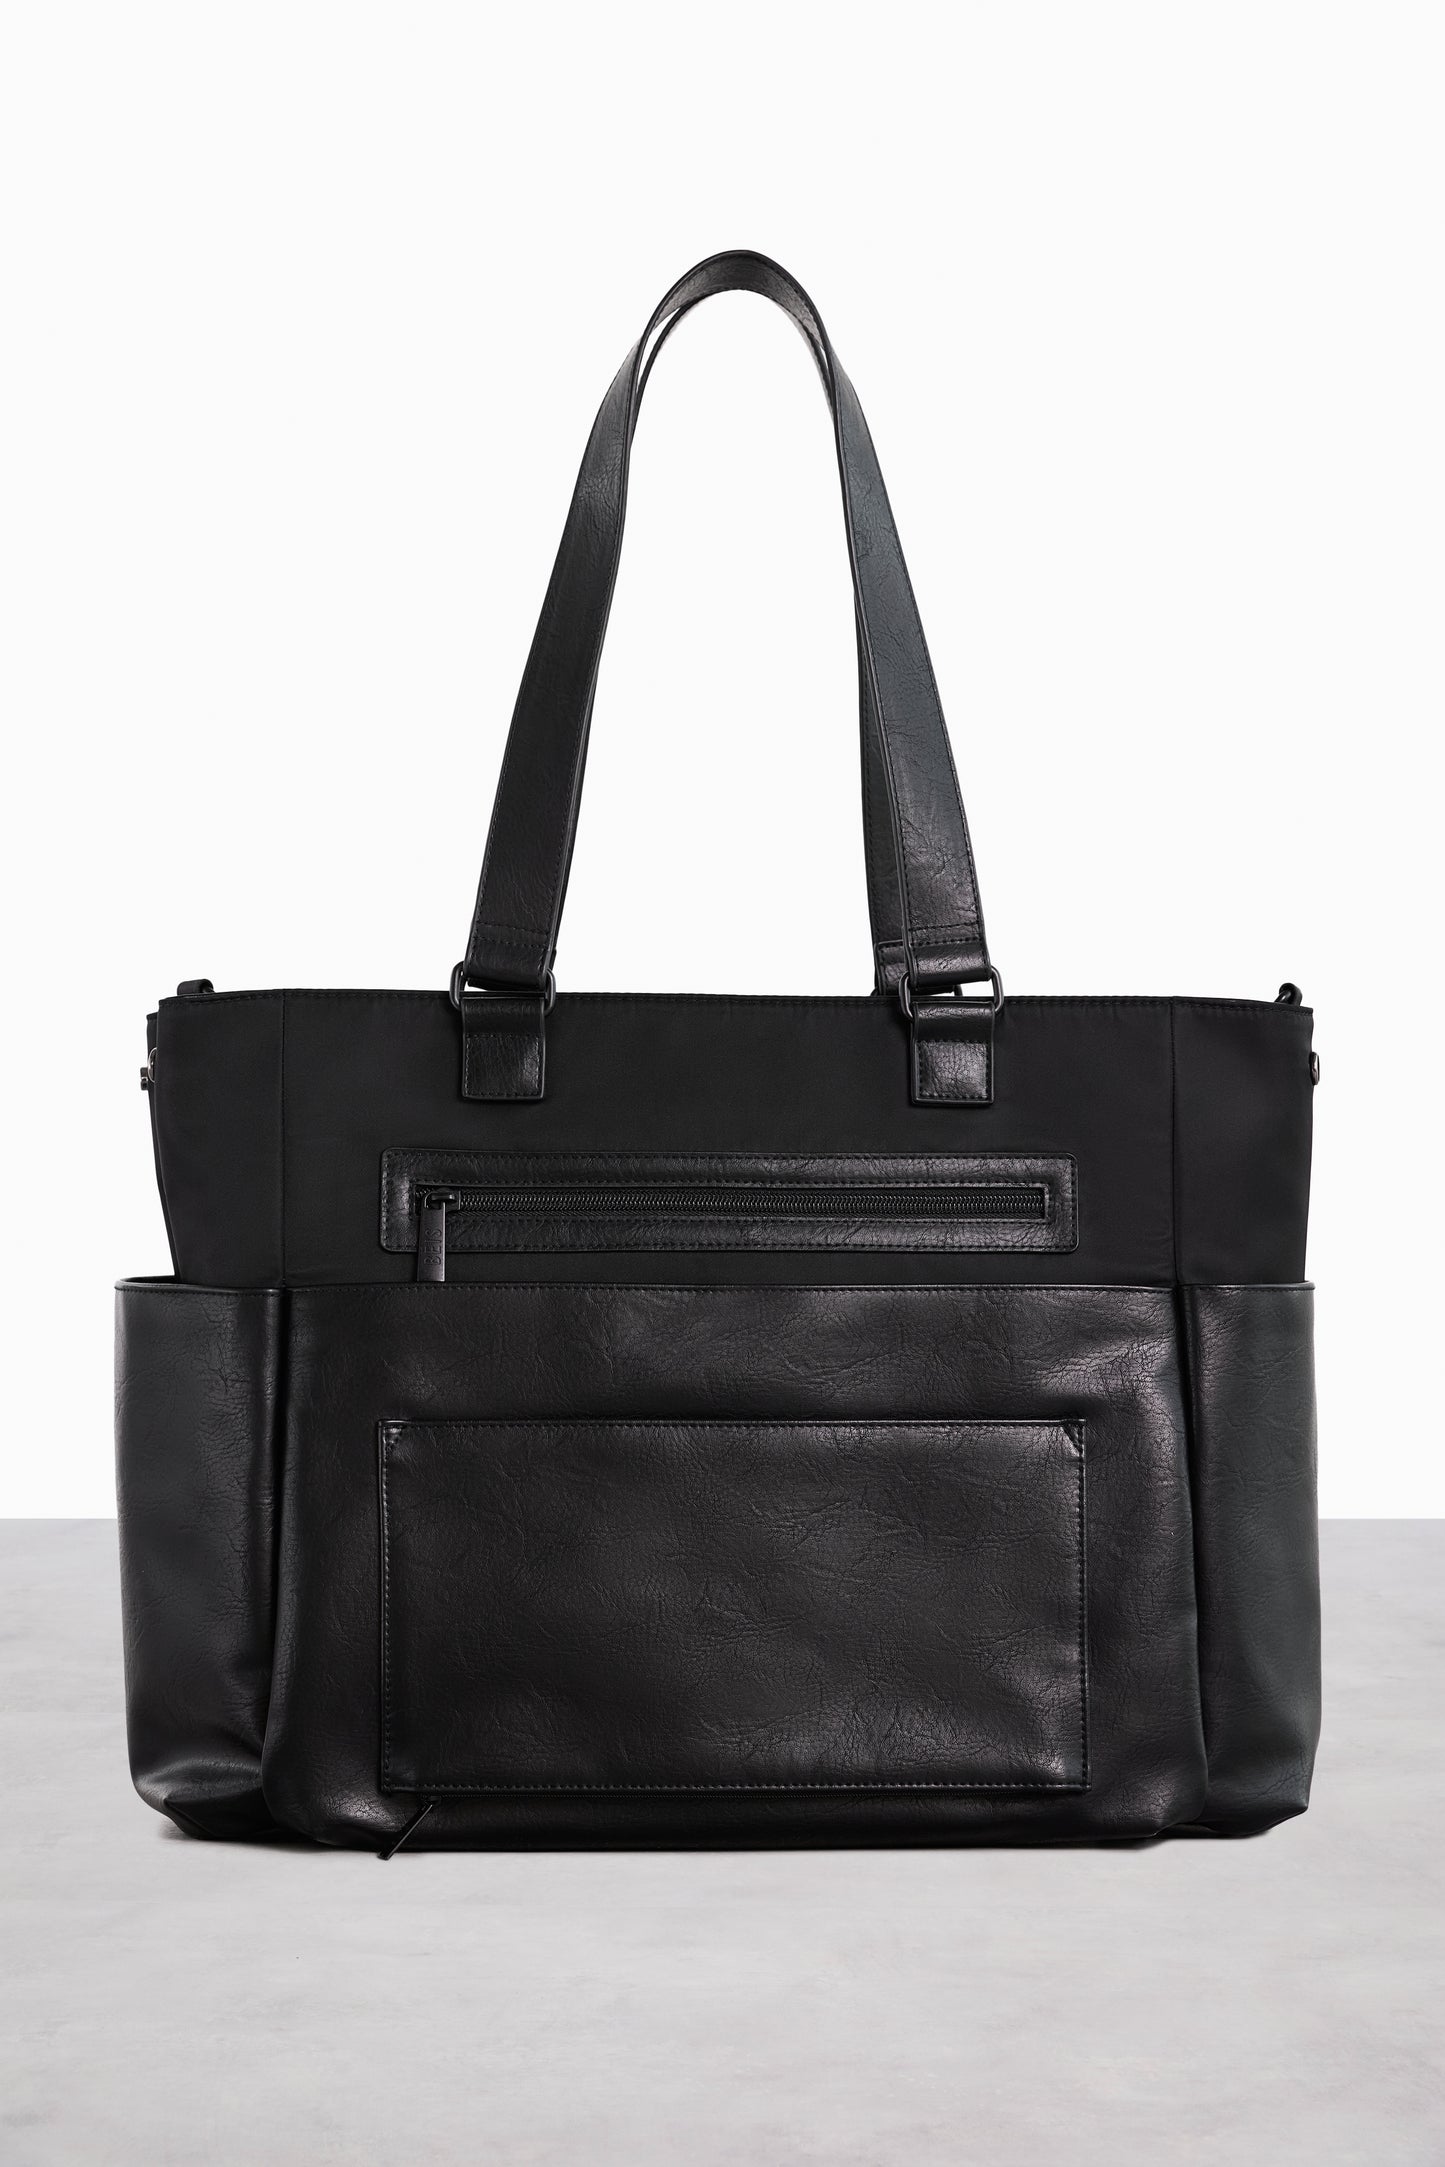 BÉIS 'The Diaper Bag' in Black - Fashionable Diaper Bag & Diaper Tote Bag